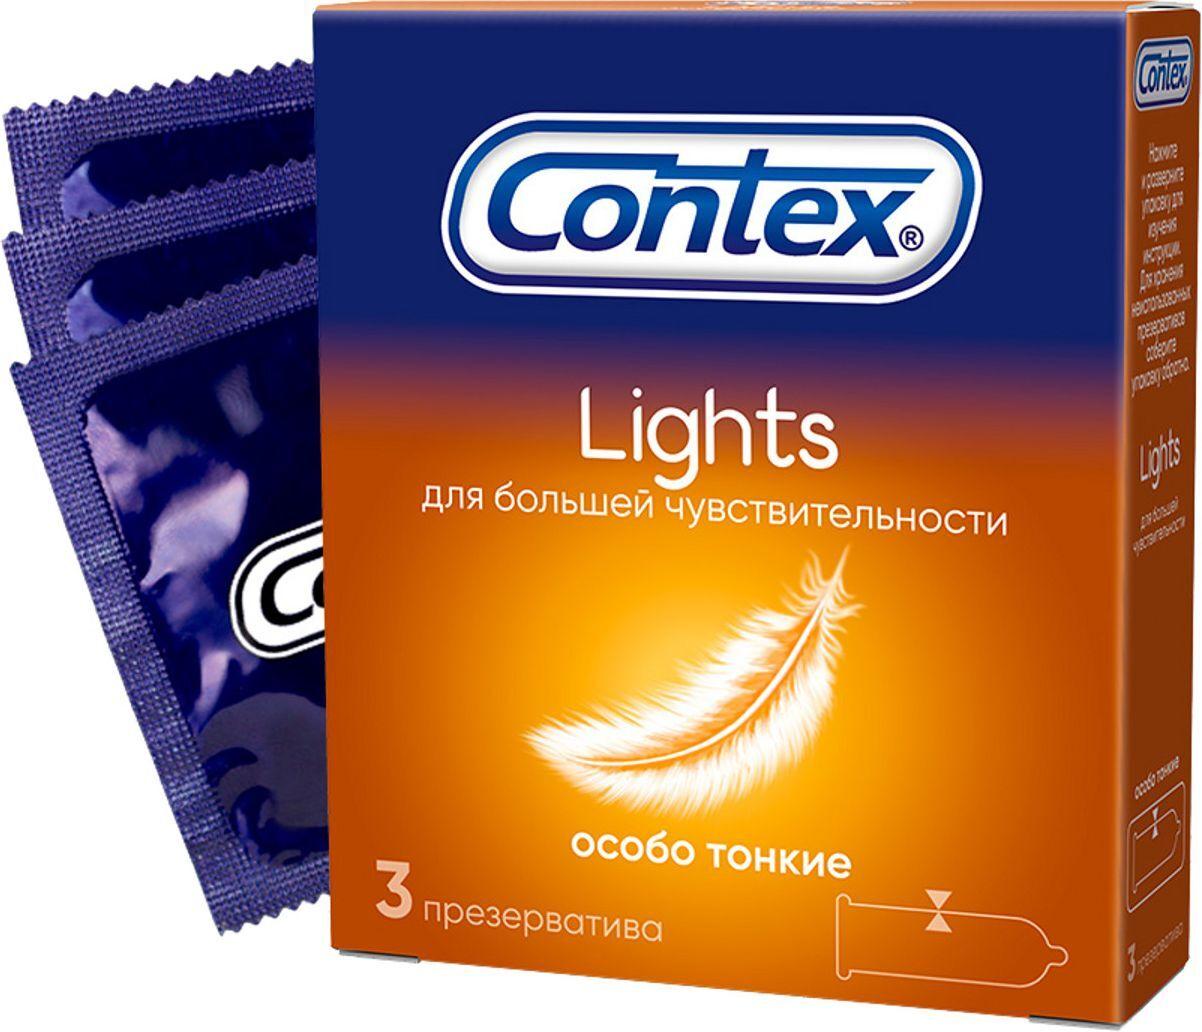 Презервативы Contex Lights латексные с силиконовой смазкой 3 штуки, картон